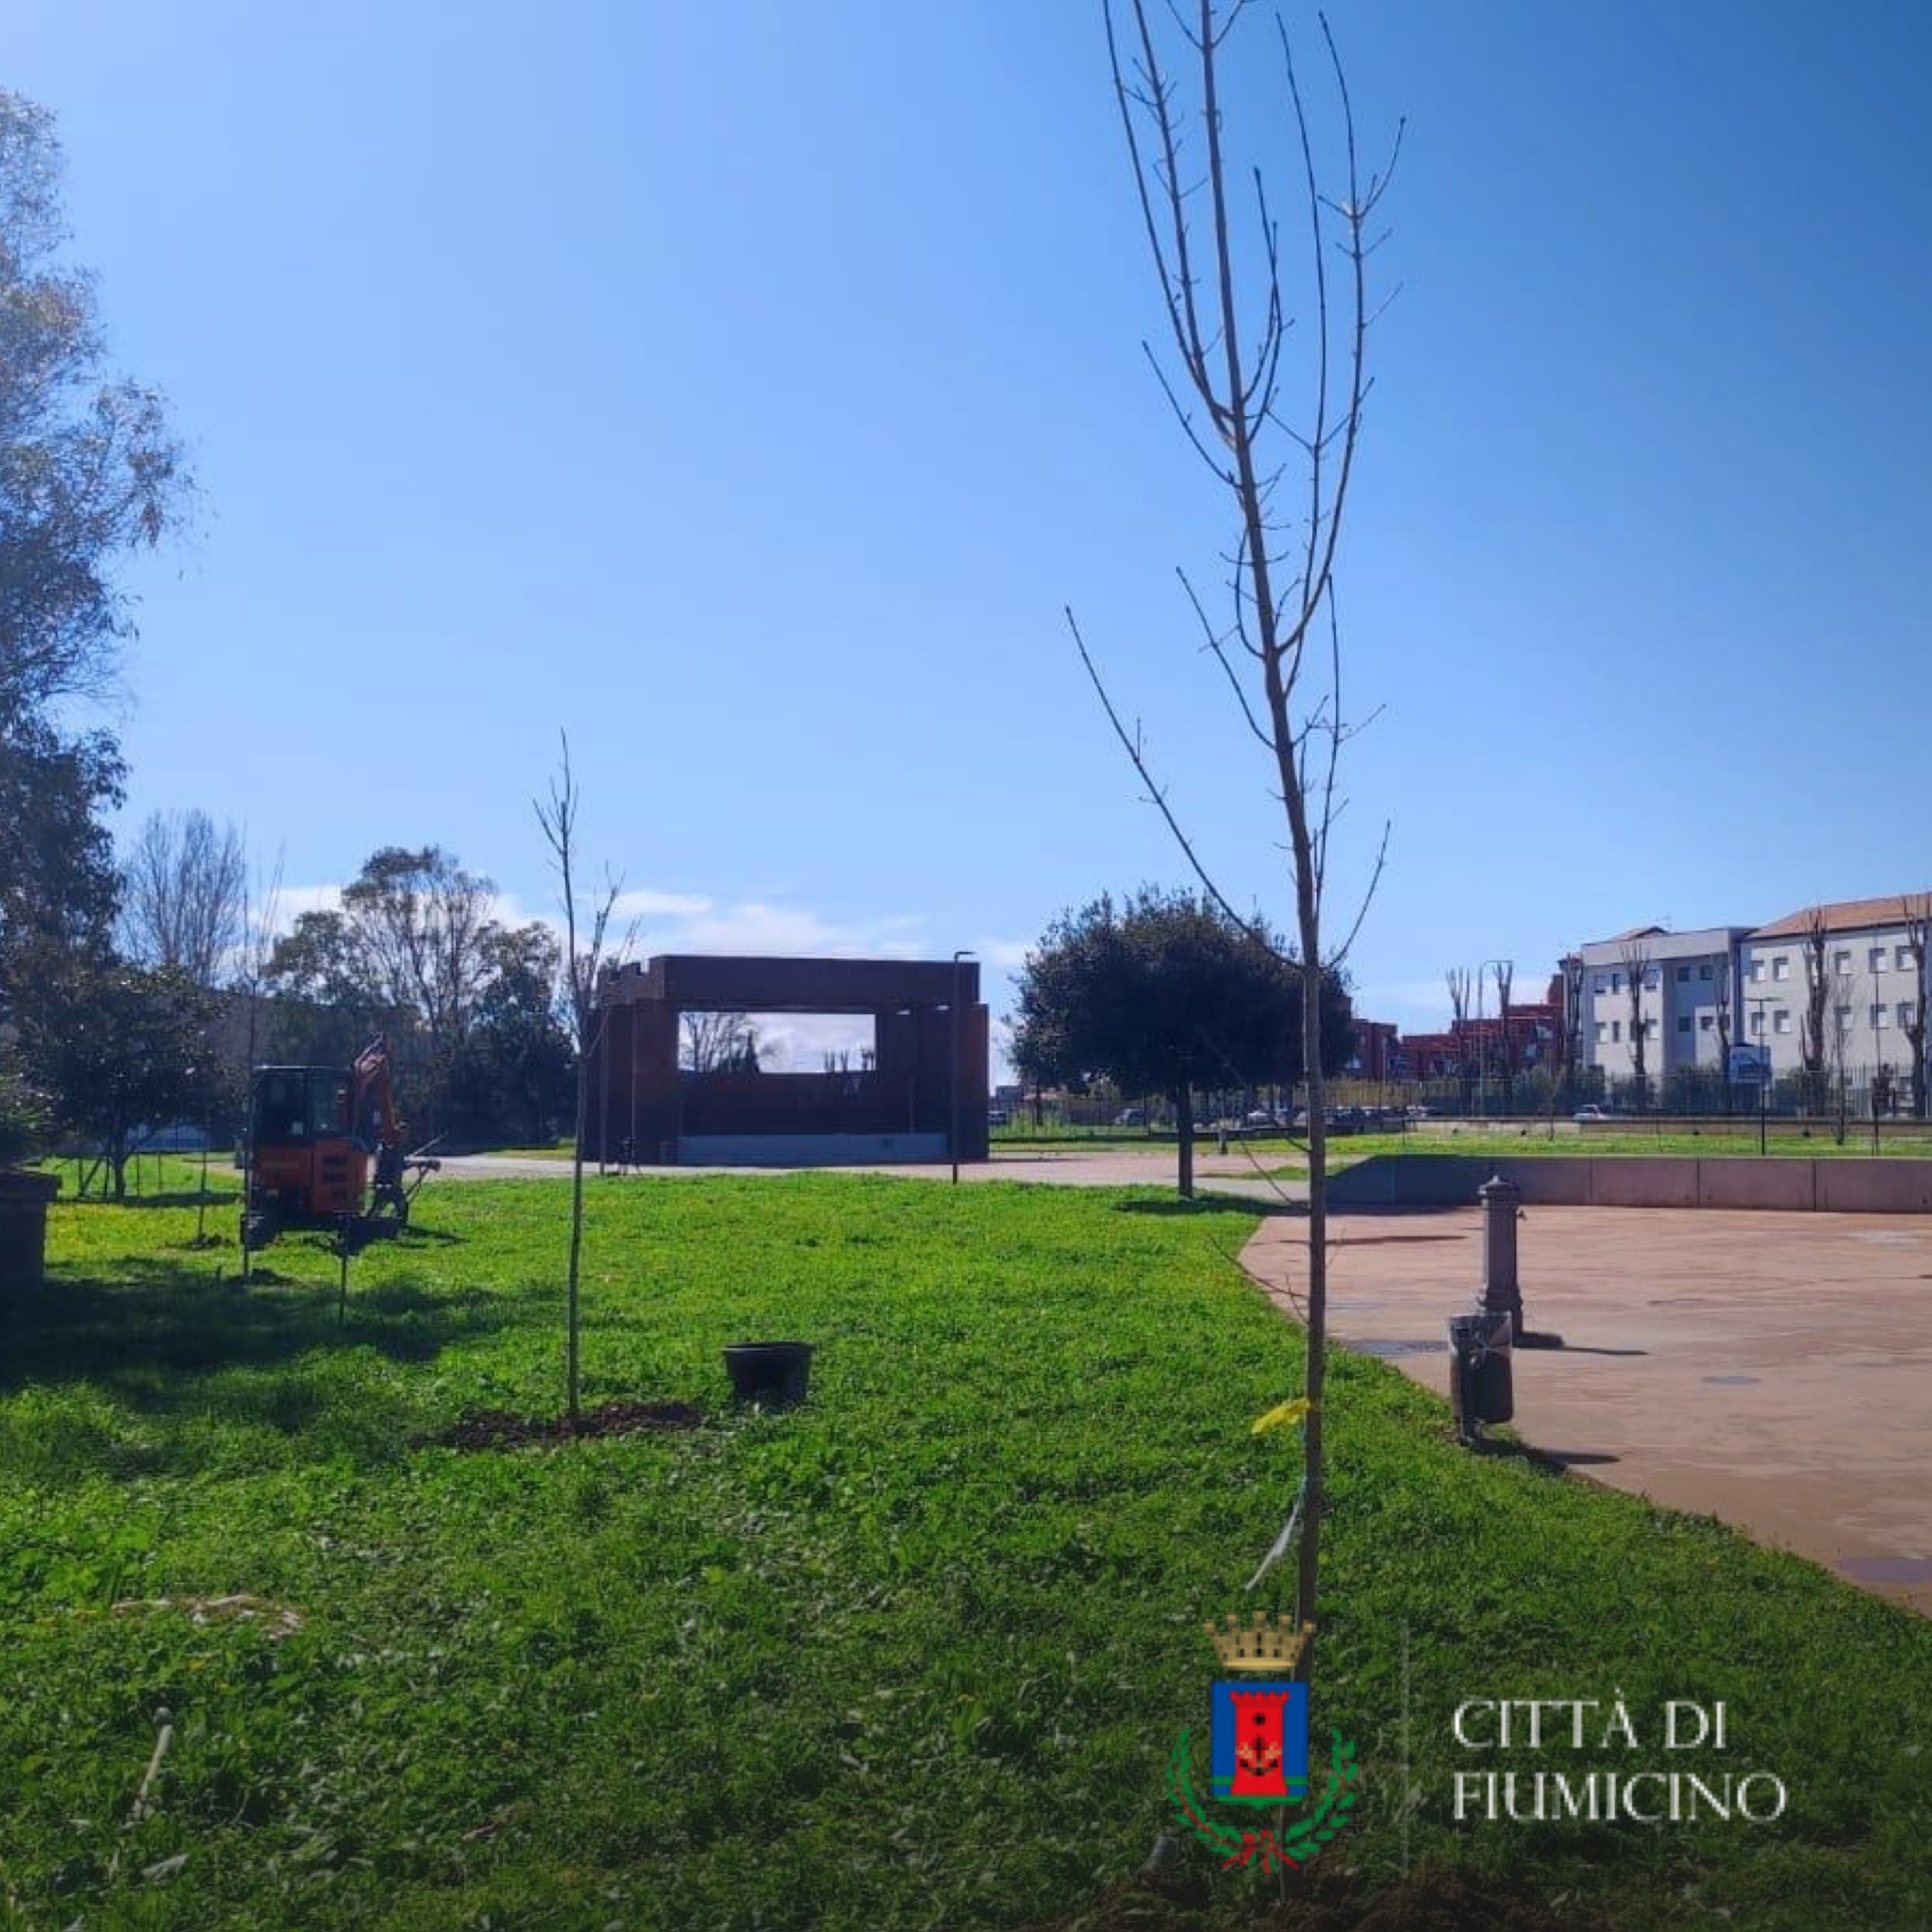 Inaugurata la messa a dimora di 100 alberi al "Parco Tommaso Forti"